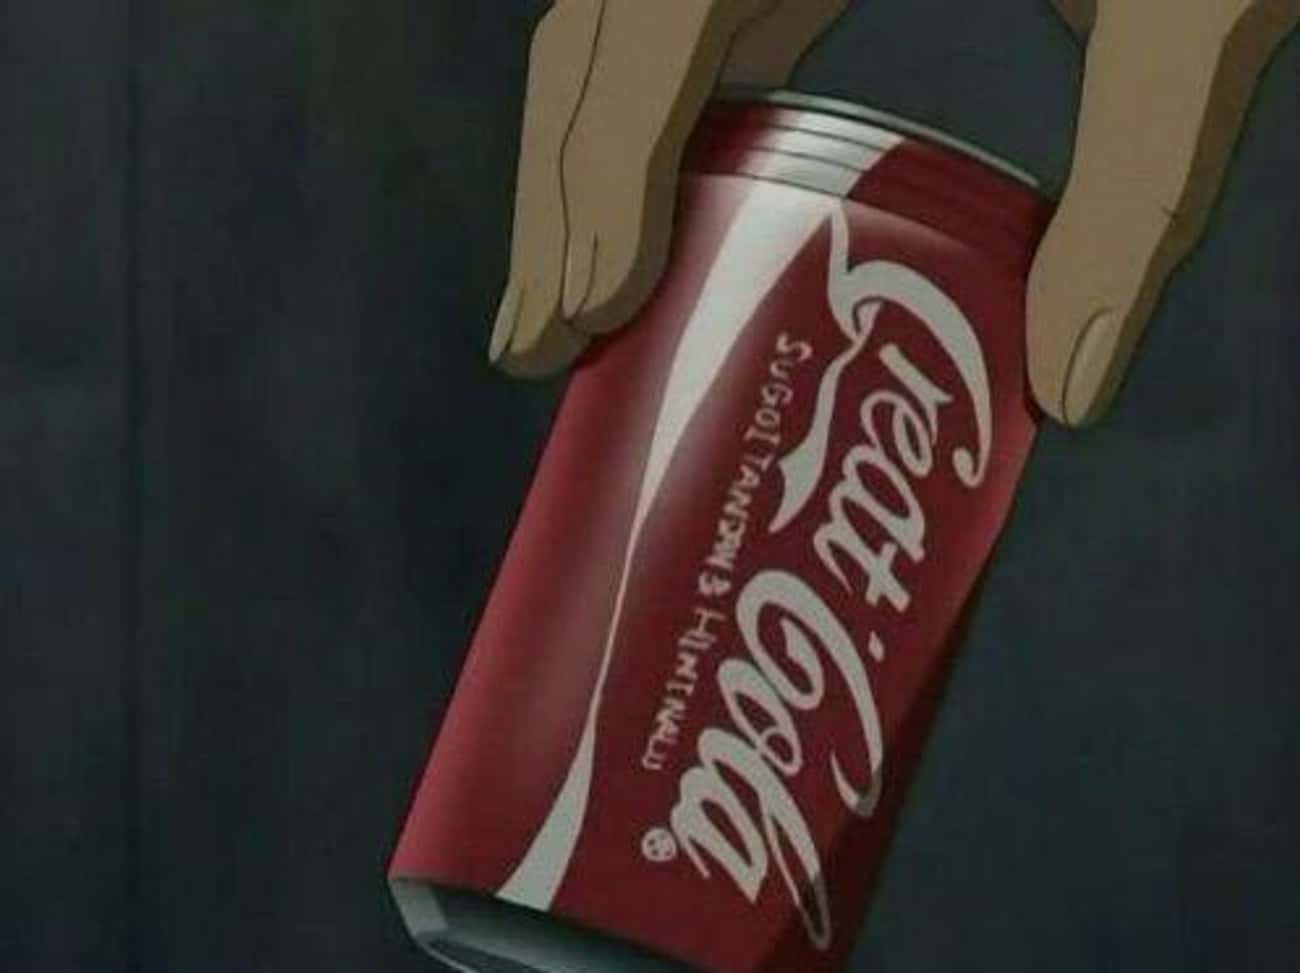 Great Cola (Coca Cola)